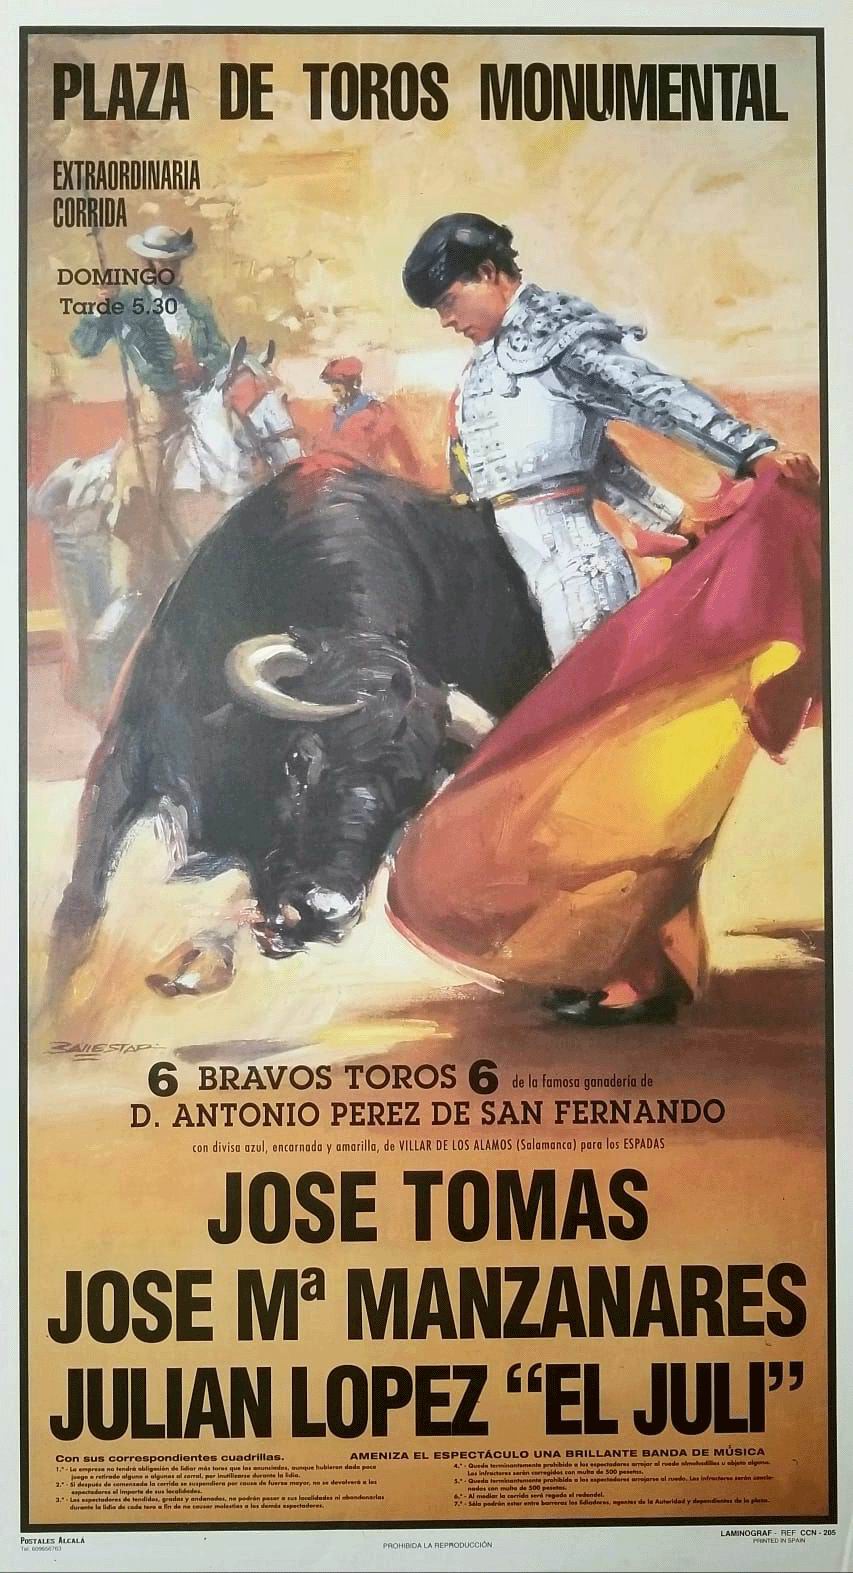 Kunstdruck Affiche encadrée Plaza de Toros de Sevilla Torero Ponce EL Cordobes Ordonez A2 240 